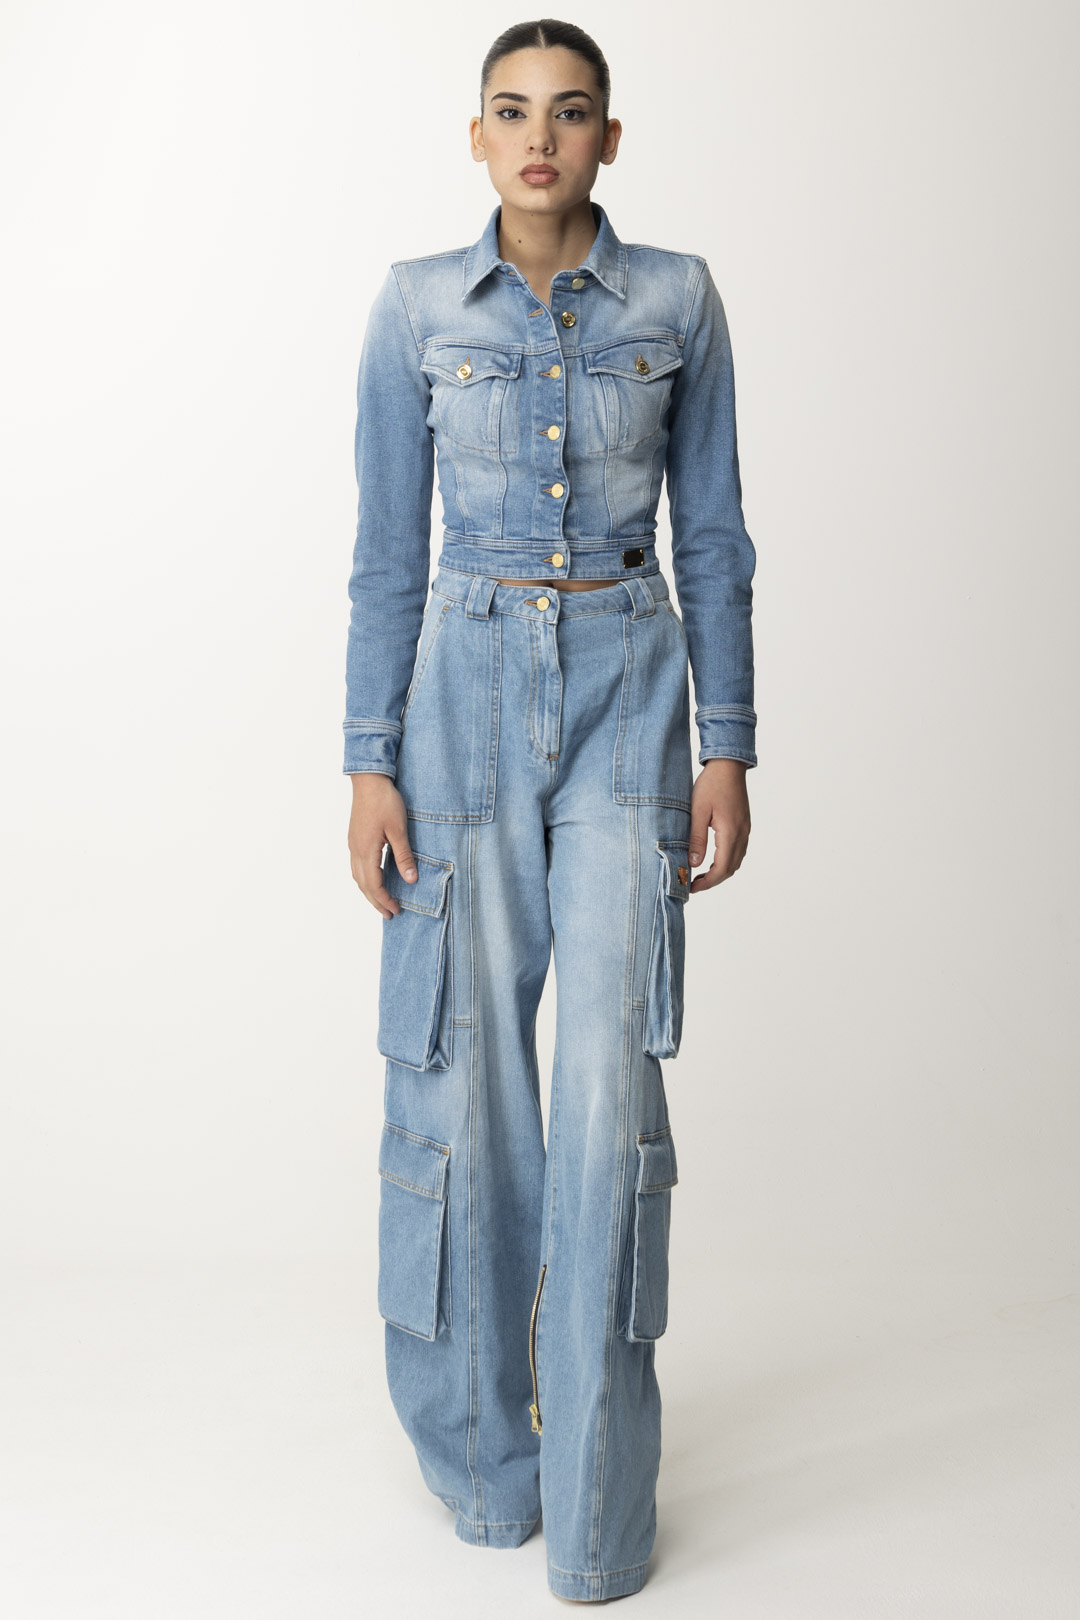 Vorschau: Elisabetta Franchi Cargo-Jeans mit Reißverschluss hinten Light blue